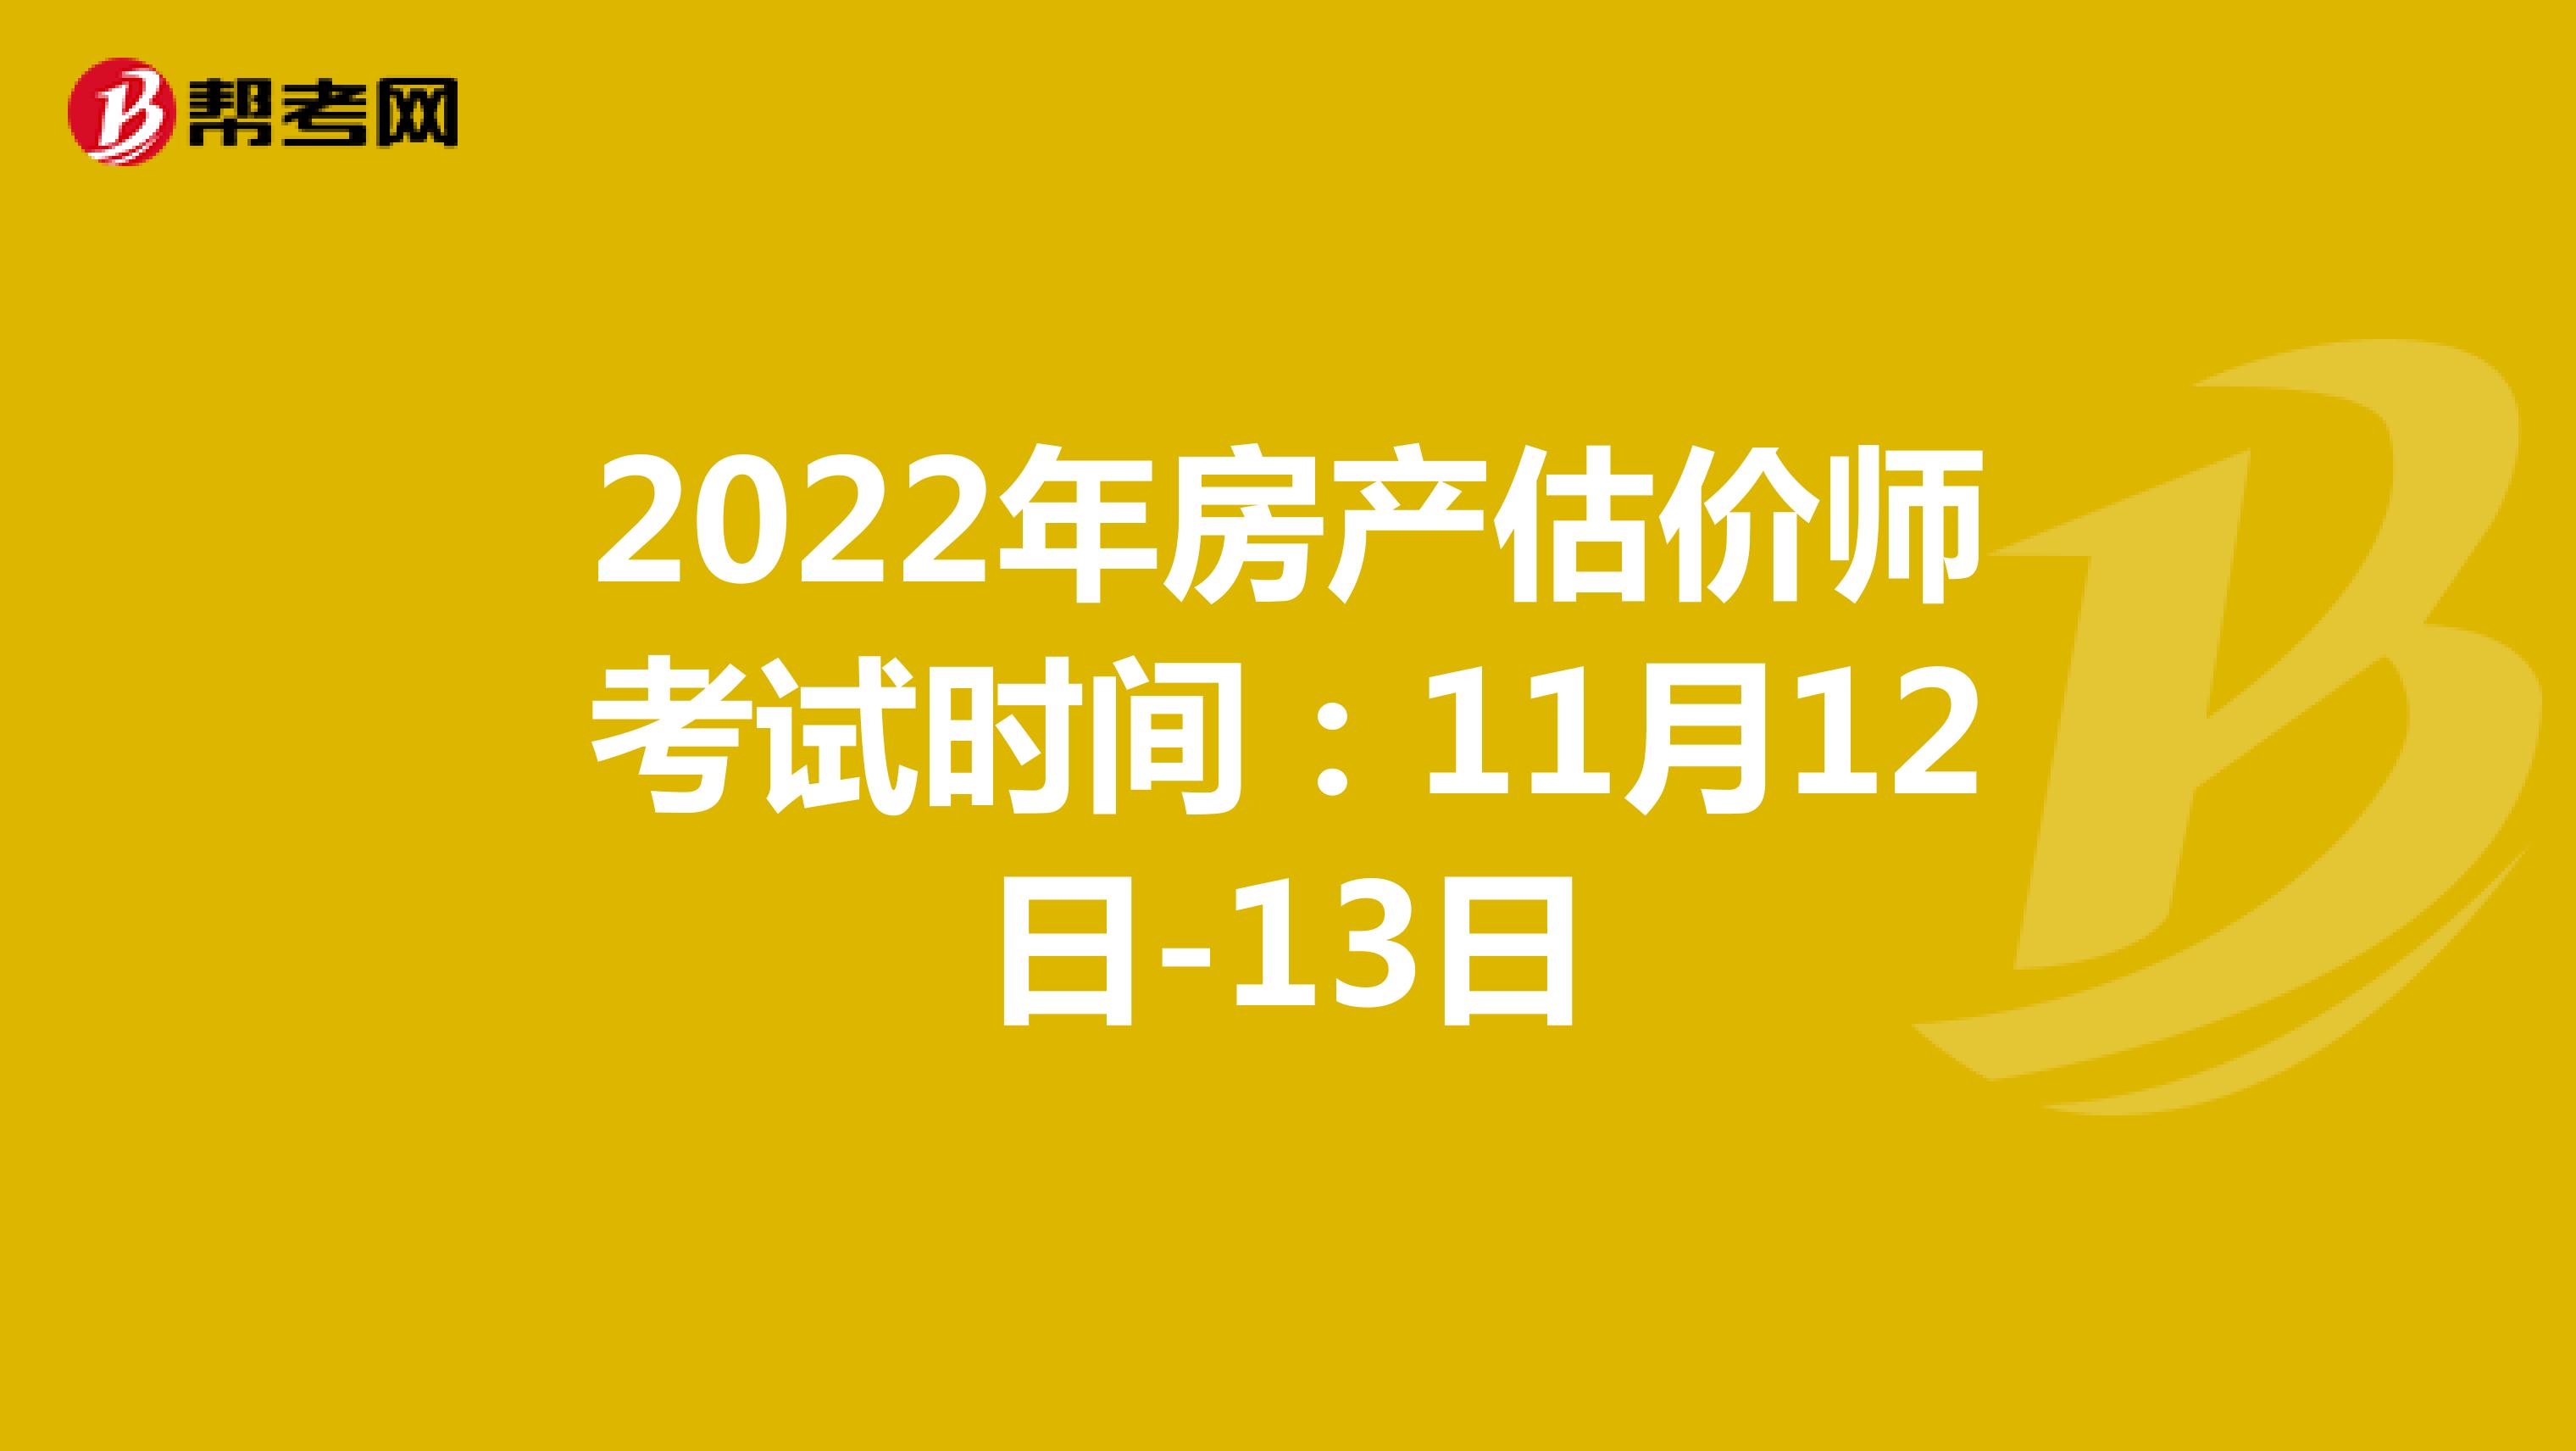 2022年房产估价师考试时间：11月12日-13日